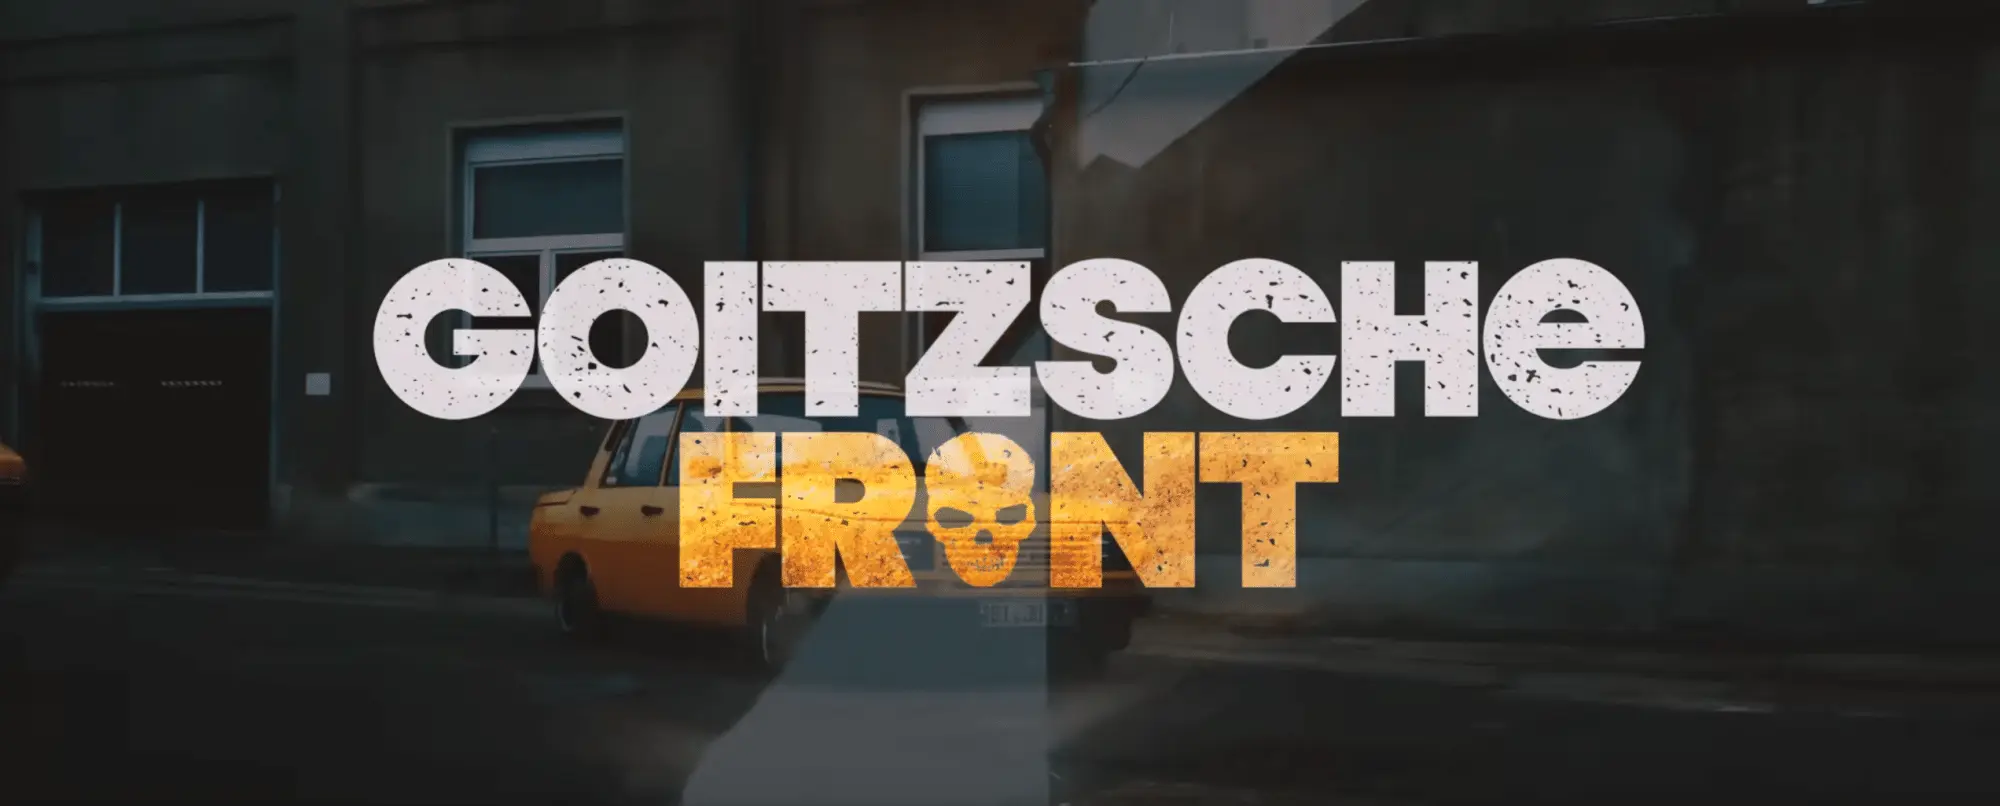 Goitzsche Front - Wenn's nicht rockt (Offizielles Video)